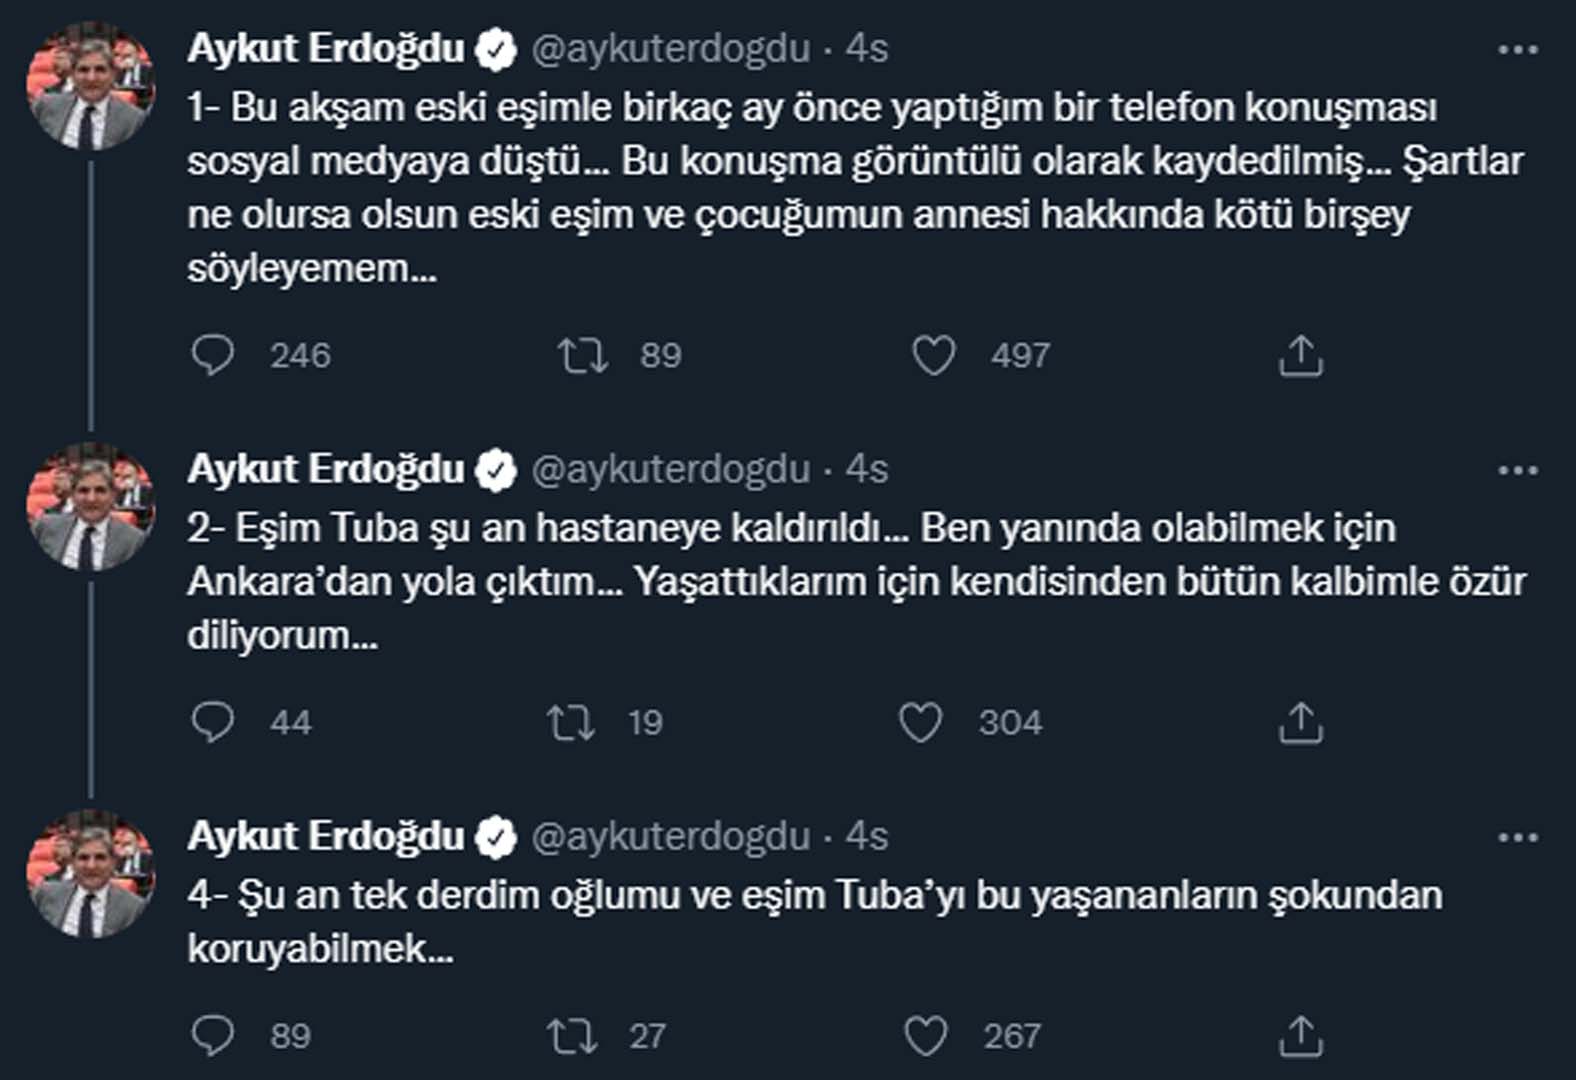 CHP'li Aykut Erdoğdu'nun özel hayatı ifşa oldu! Eski eşinin paylaşımı yeni eşi Tuba Torun'u hastanelik etti! 50 kişi ile yattı dediği...